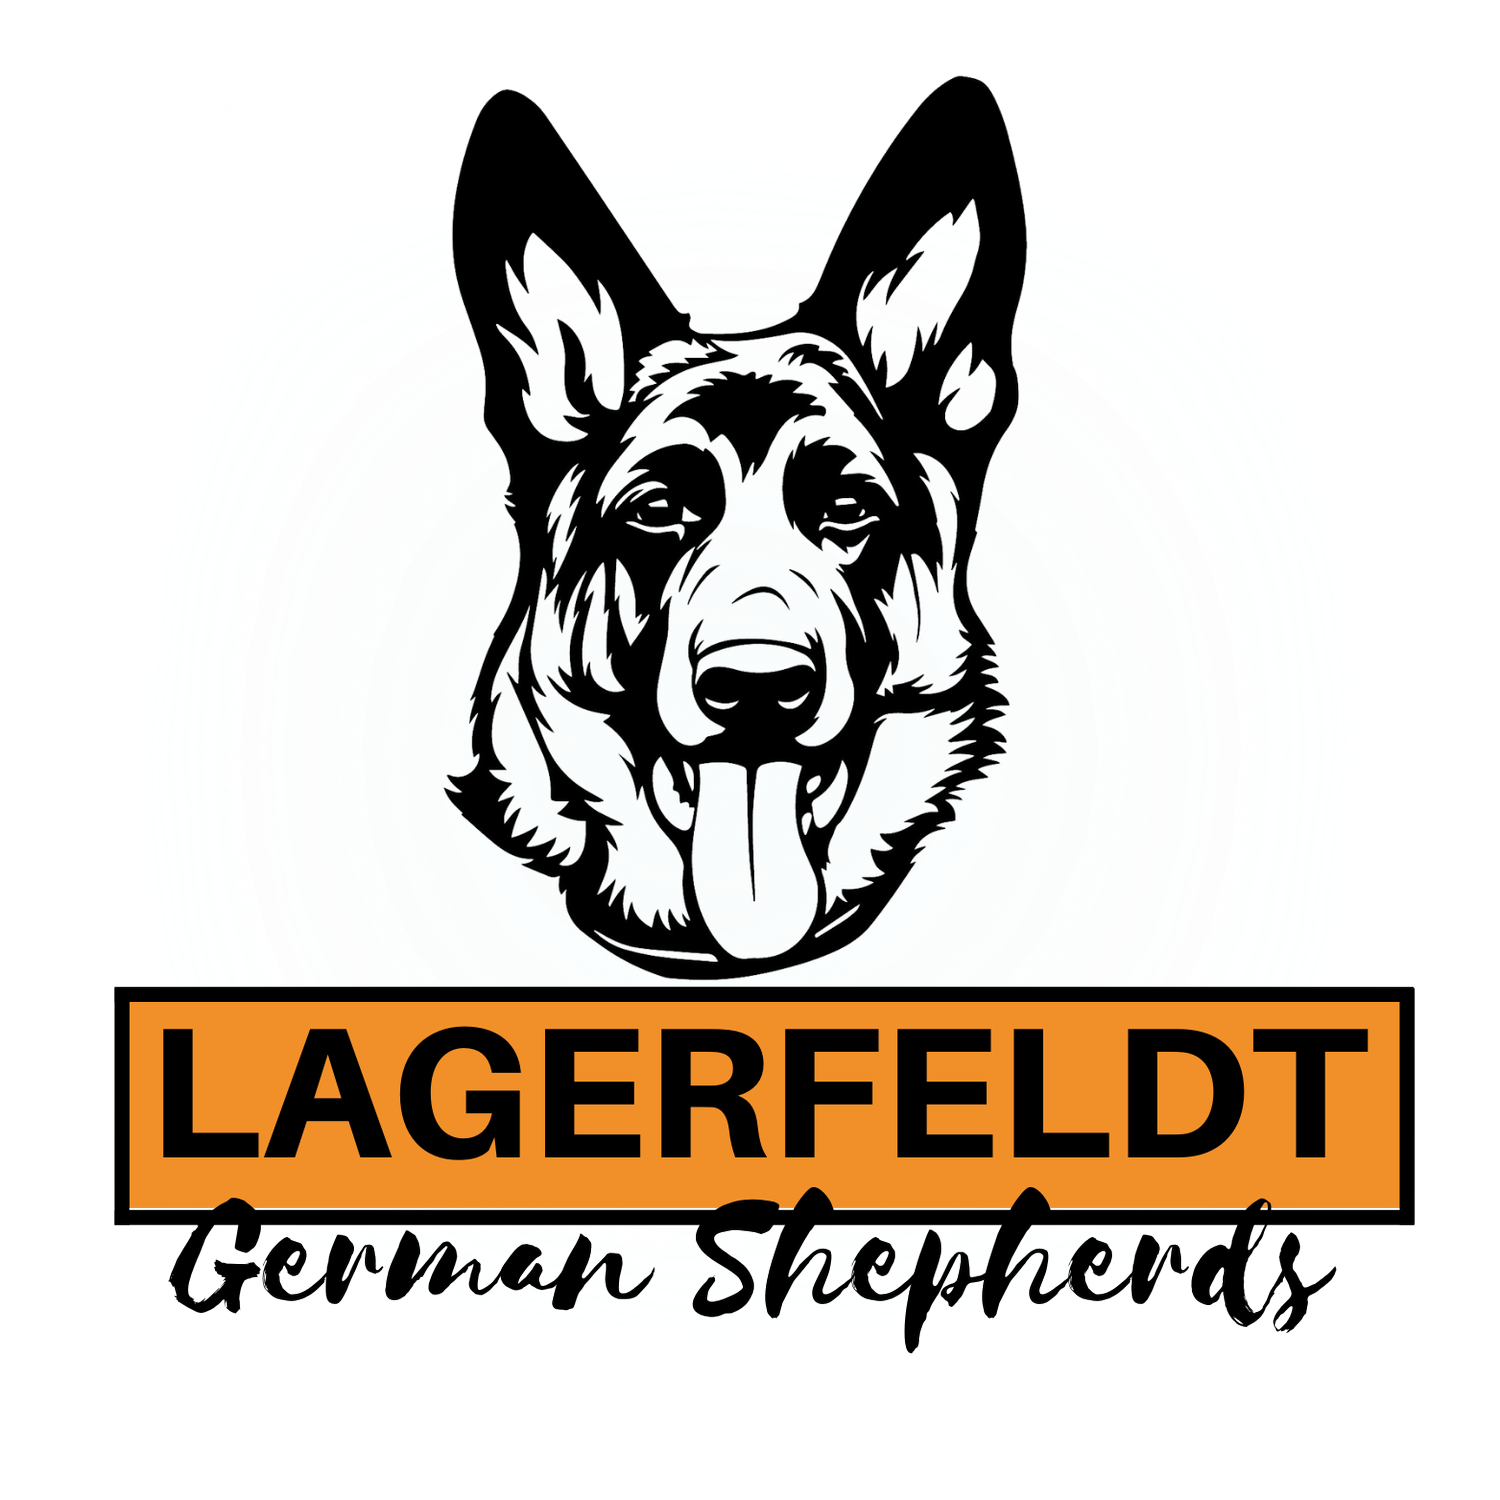 Lagerfeldt German Shepherds